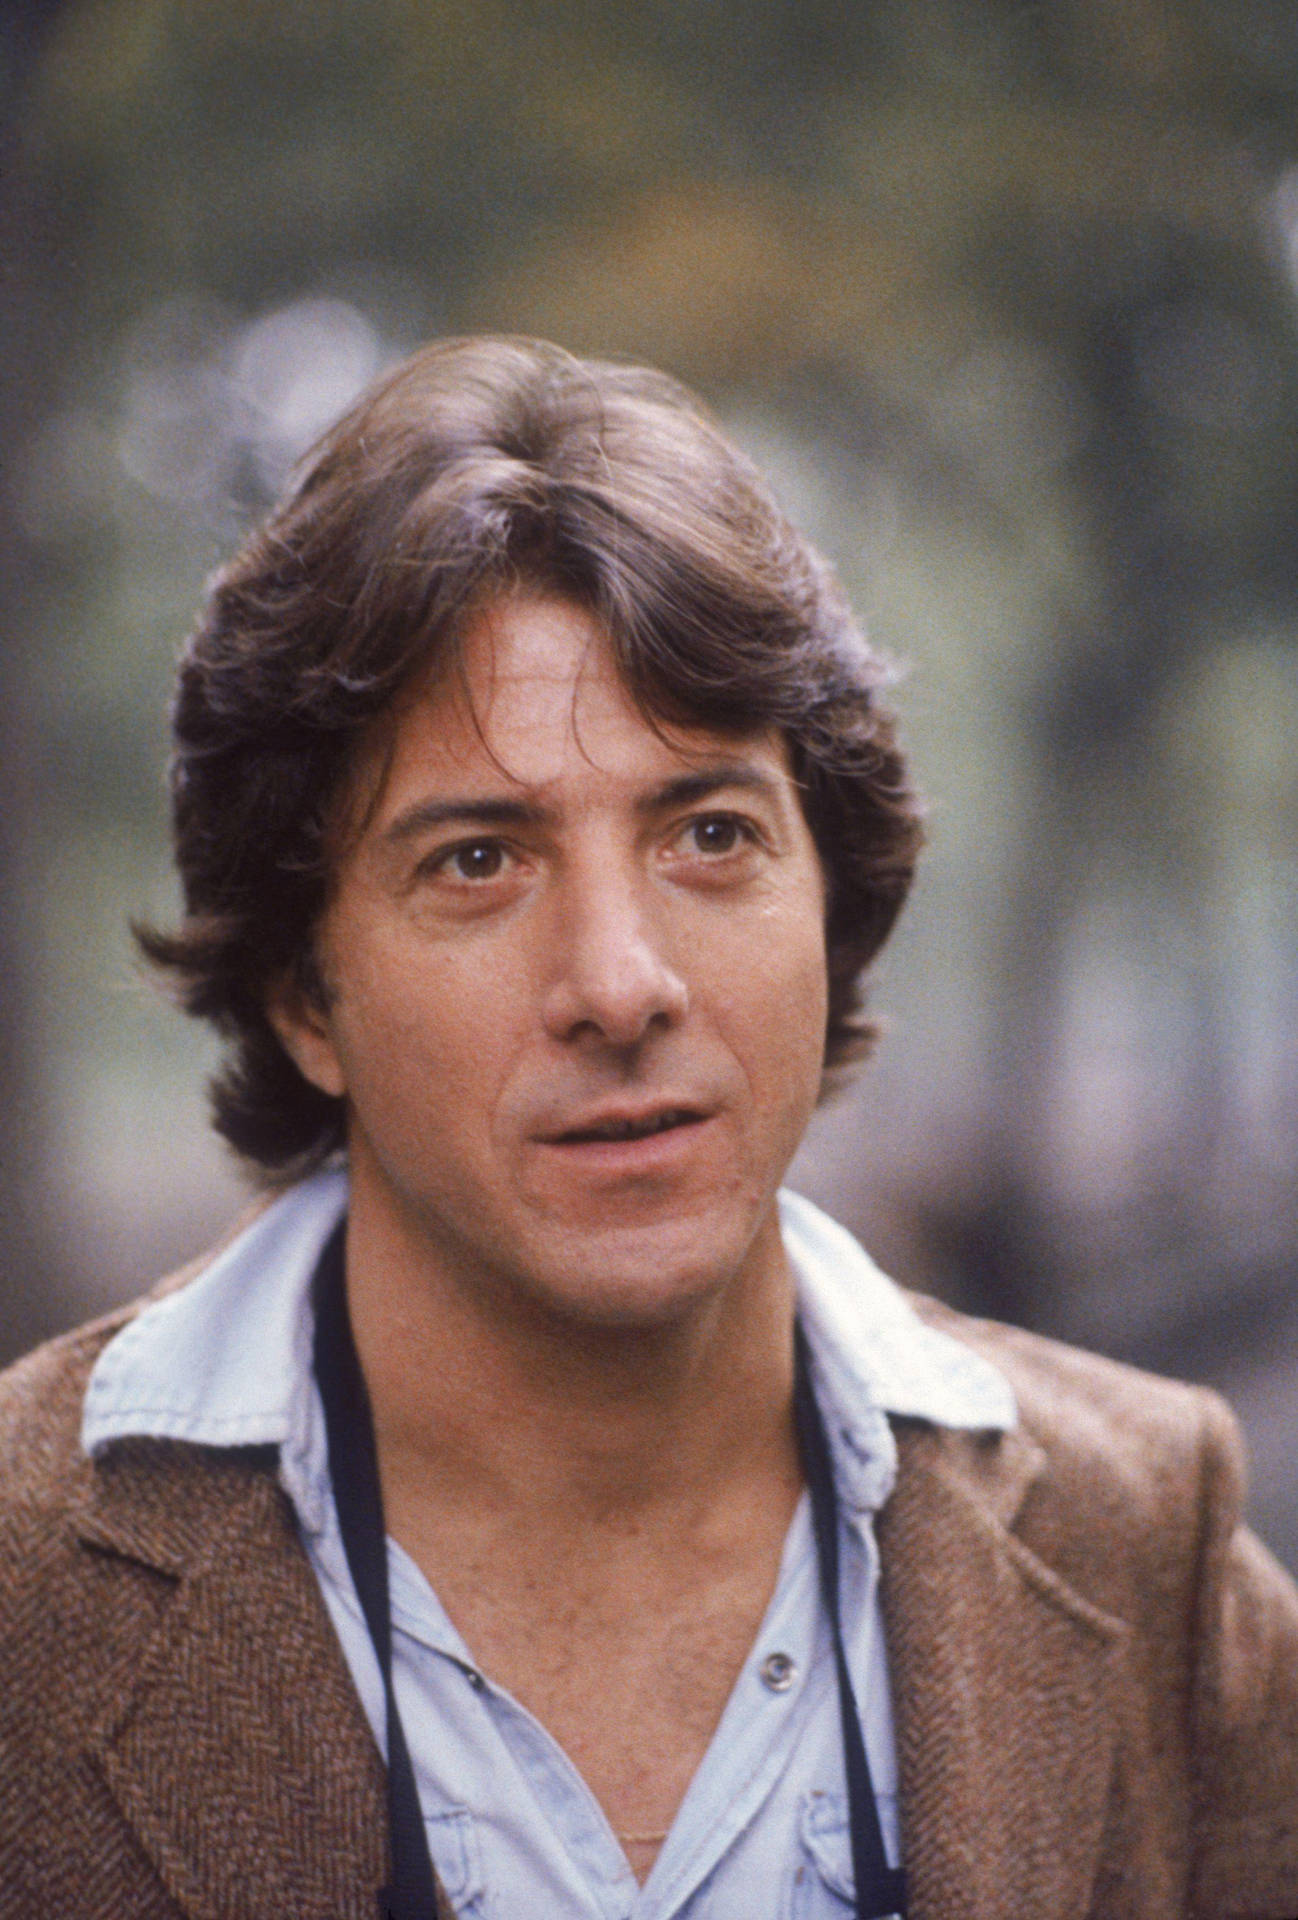 Personajede Dustin Hoffman En La Película Ted Kramer. Fondo de pantalla